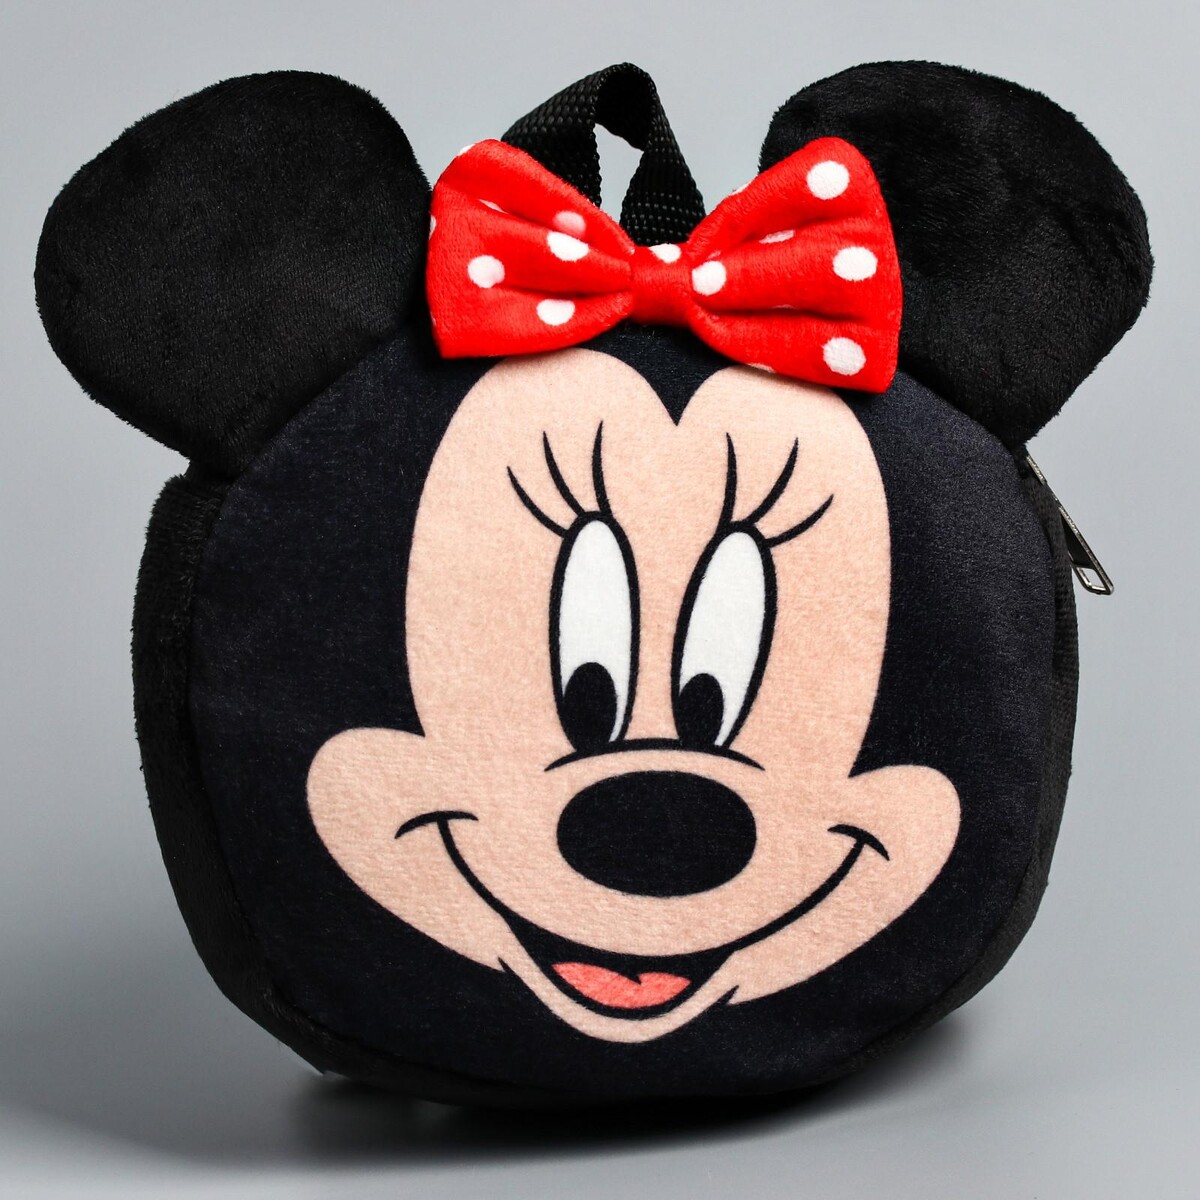 Рюкзак детский плюшевый, 18,5 см х 5 см х 22 см